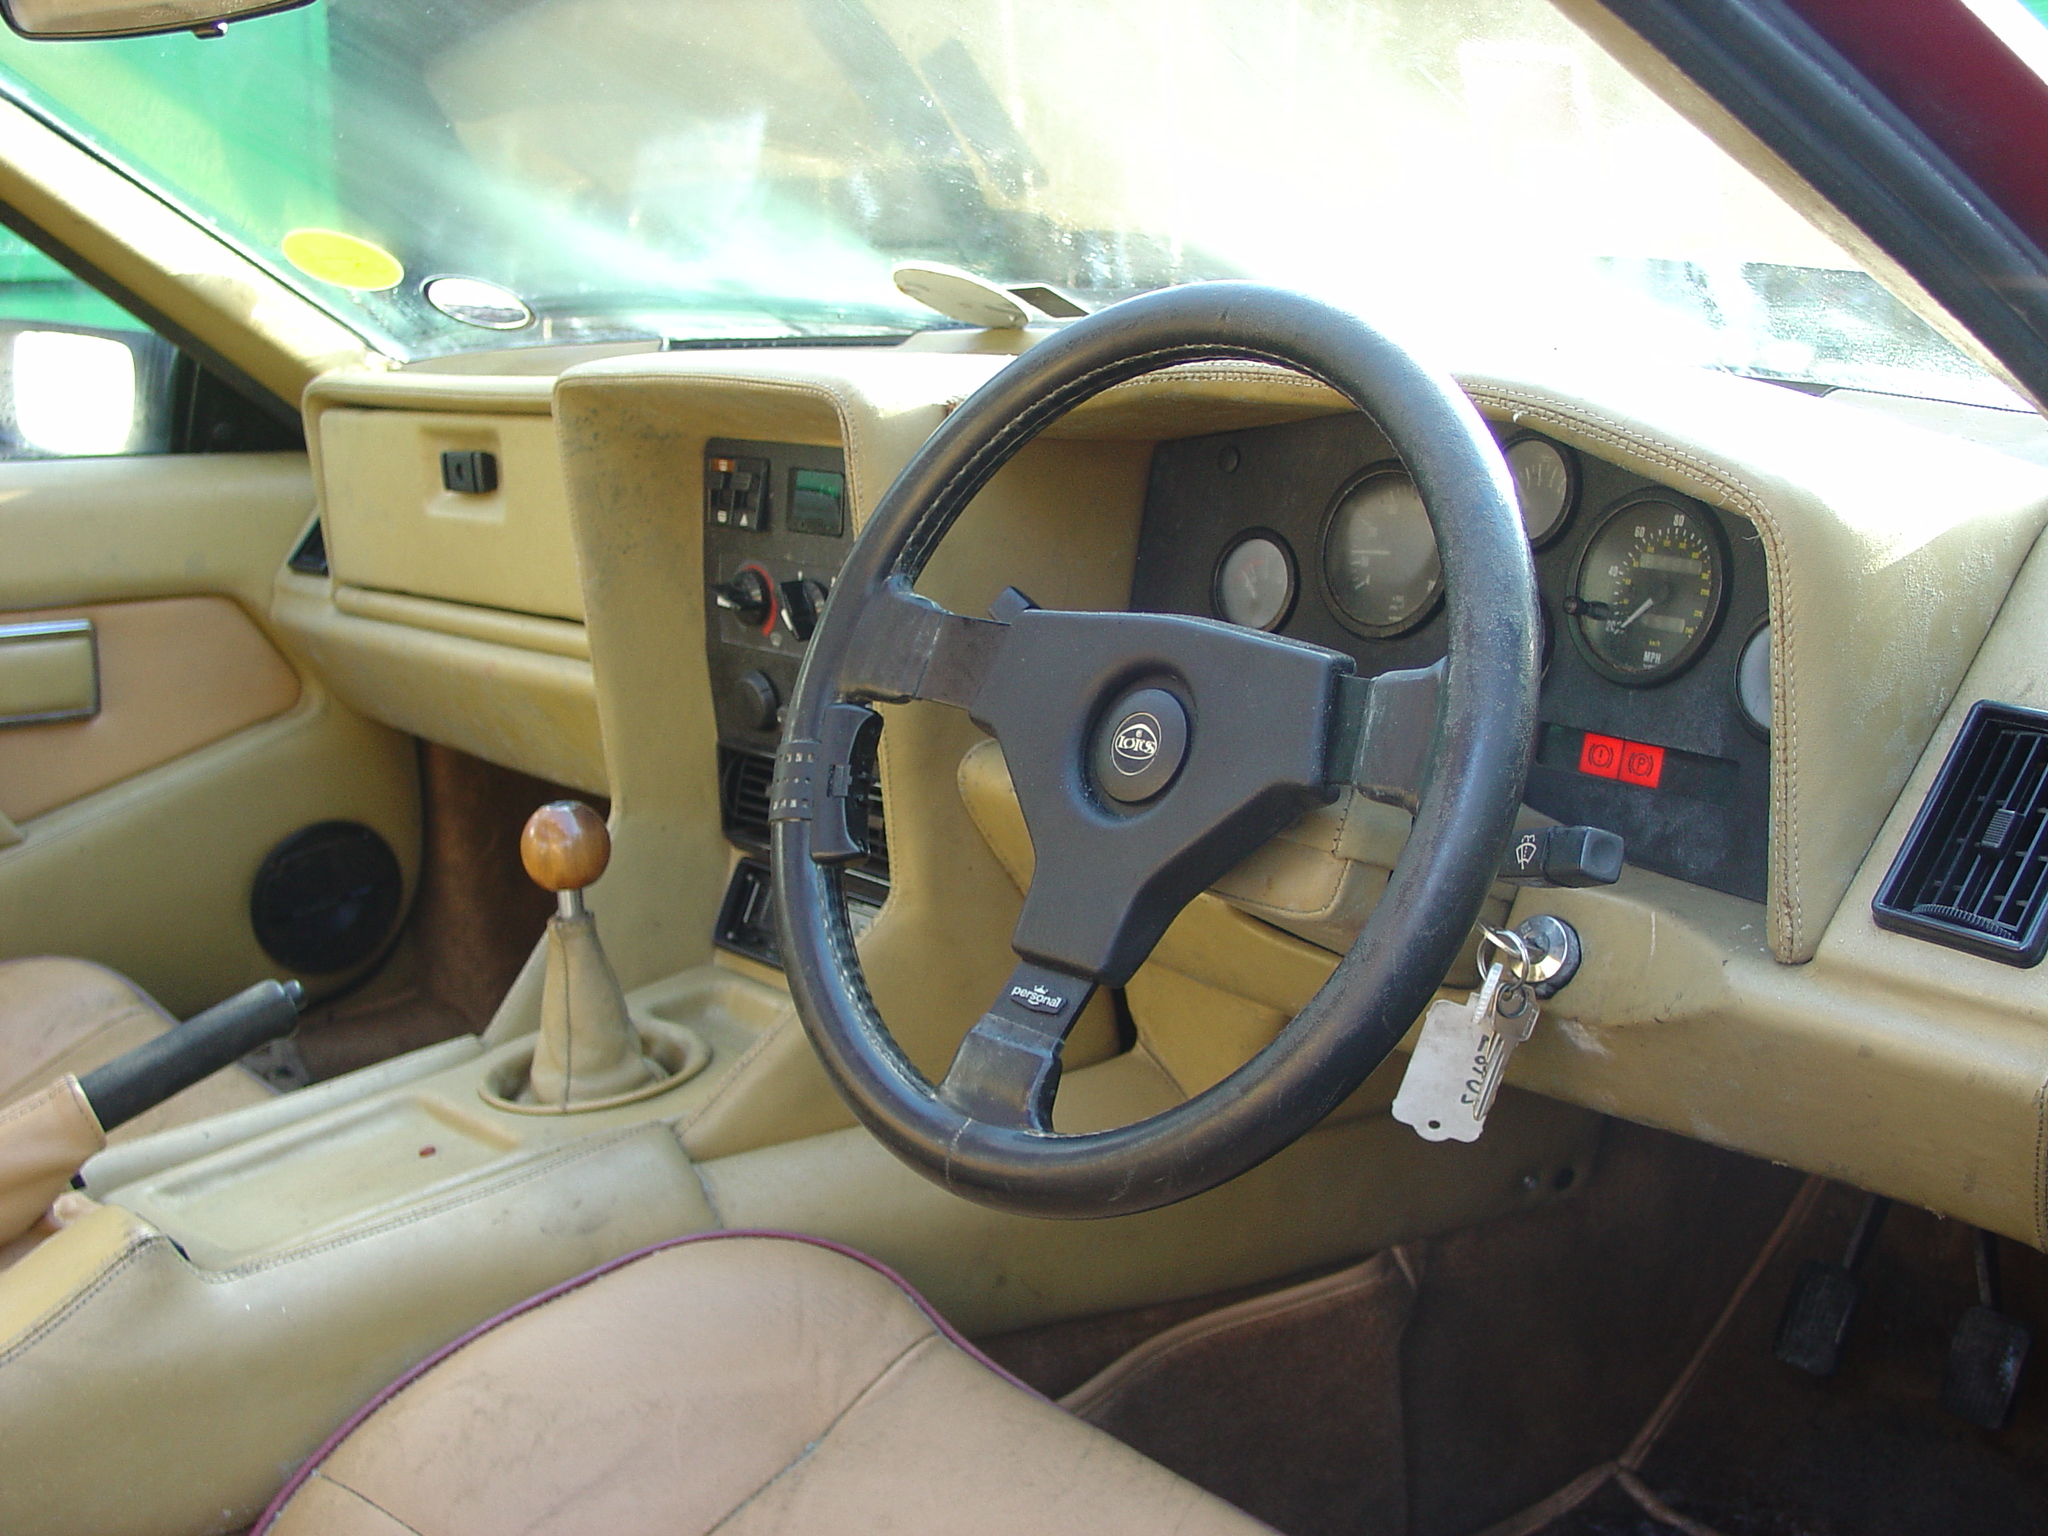 B140 CMT - 1984 Lotus Excel - Interior | Flickr - Photo Sharing!